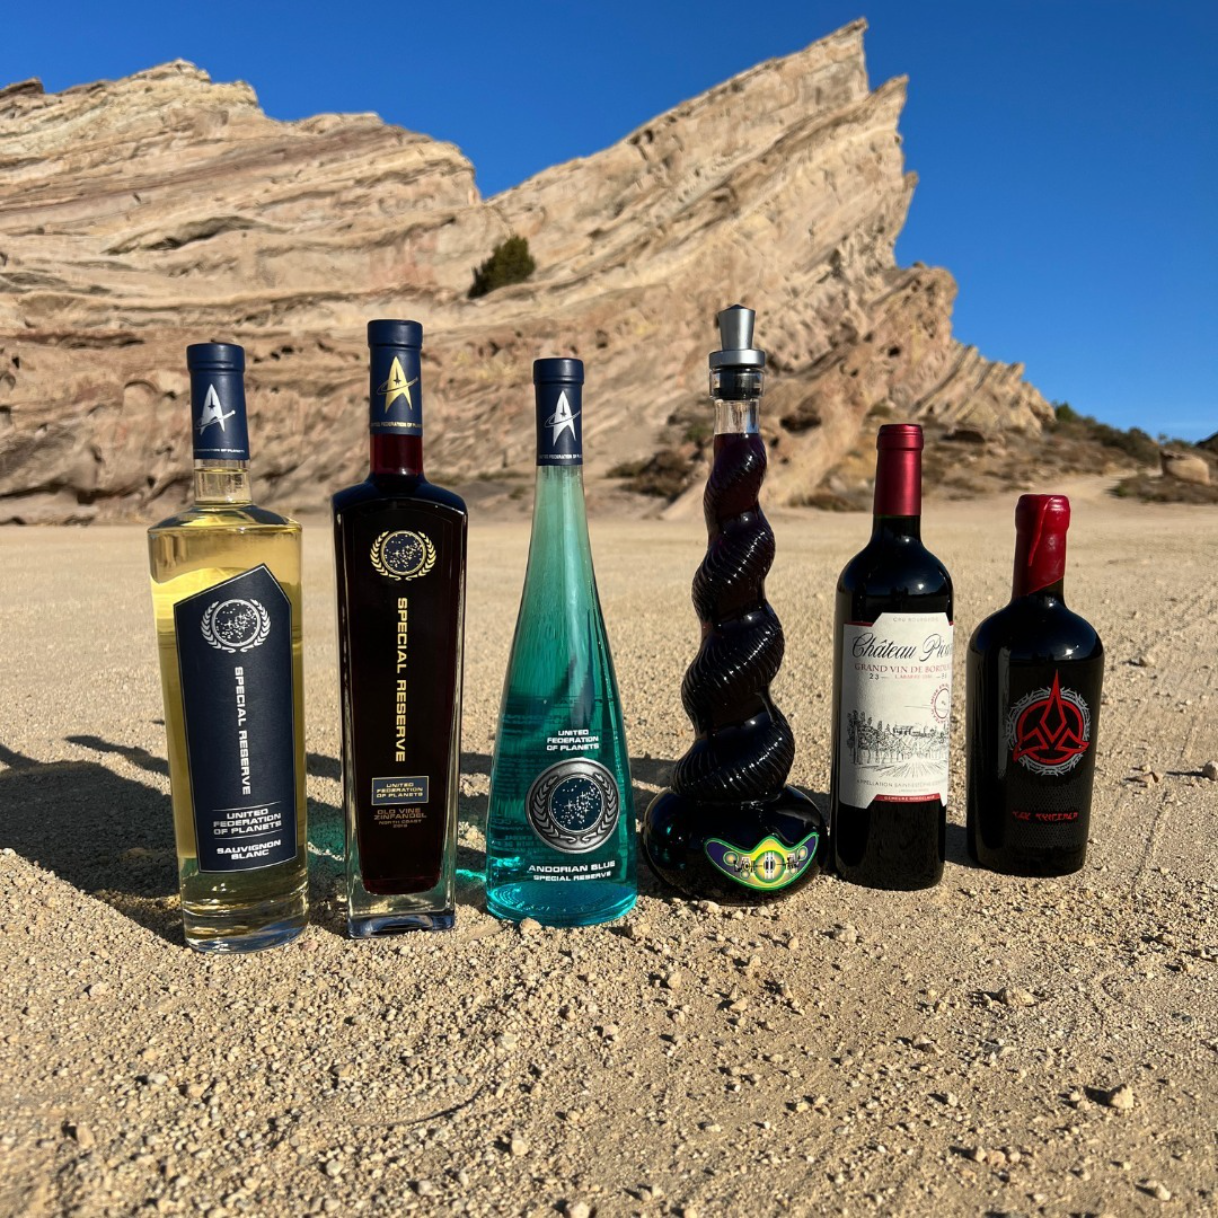 6 bottles of Star Trek wines in the desert 